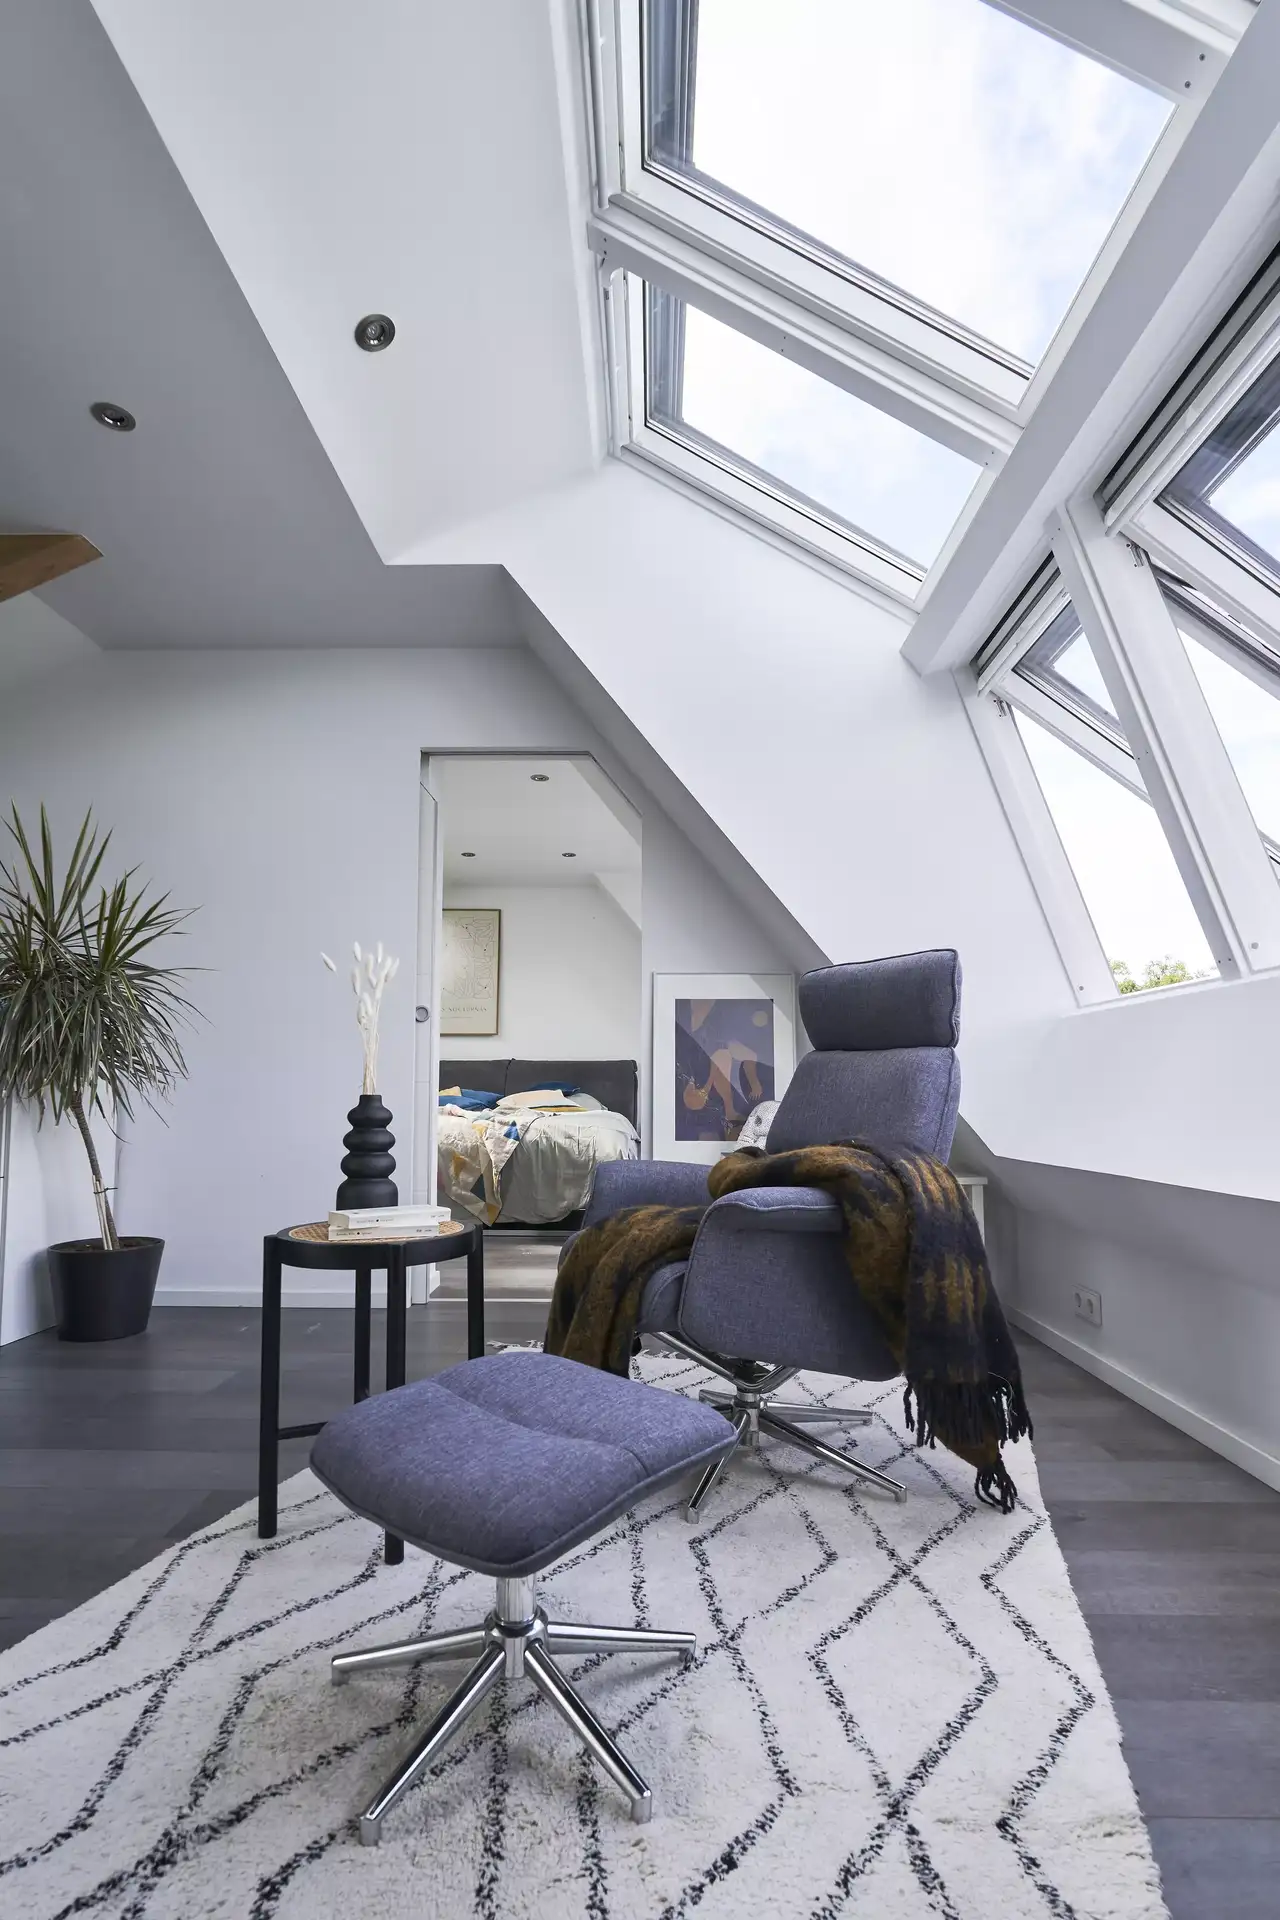 Zeitgemäßes Wohnzimmer im Dachboden mit VELUX Dachflächenfenstern und gemütlichem blauen Sessel.